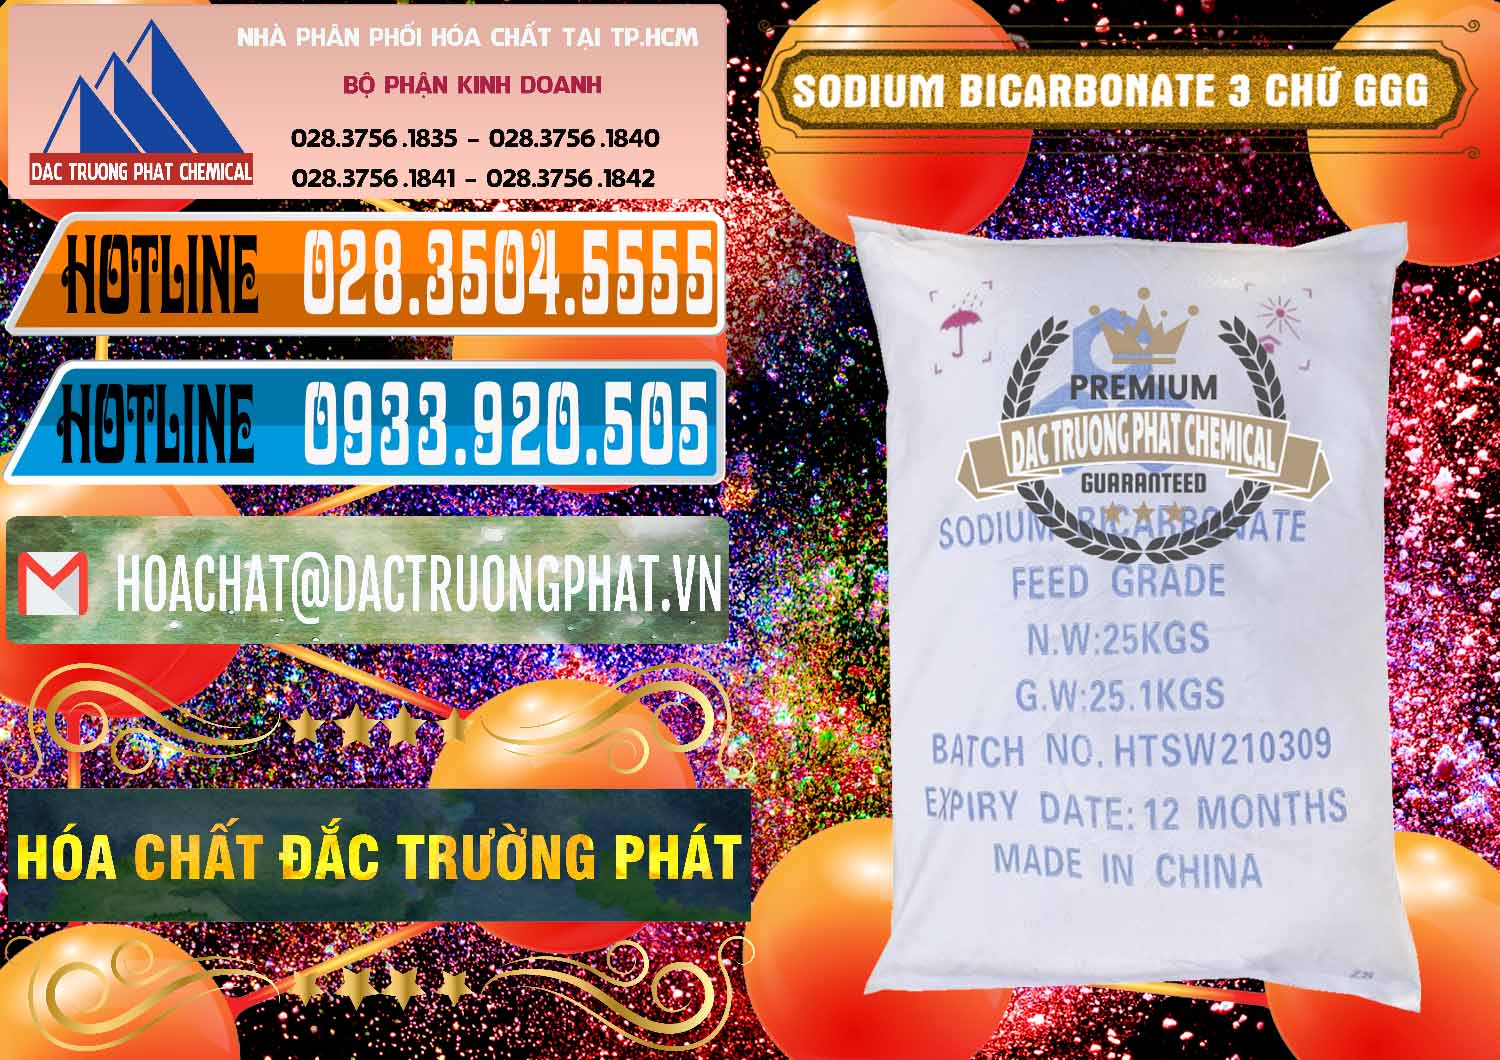 Chuyên cung ứng và bán Sodium Bicarbonate – Bicar NaHCO3 Food Grade 3 Chữ GGG Trung Quốc China - 0259 - Cty chuyên phân phối và kinh doanh hóa chất tại TP.HCM - stmp.net